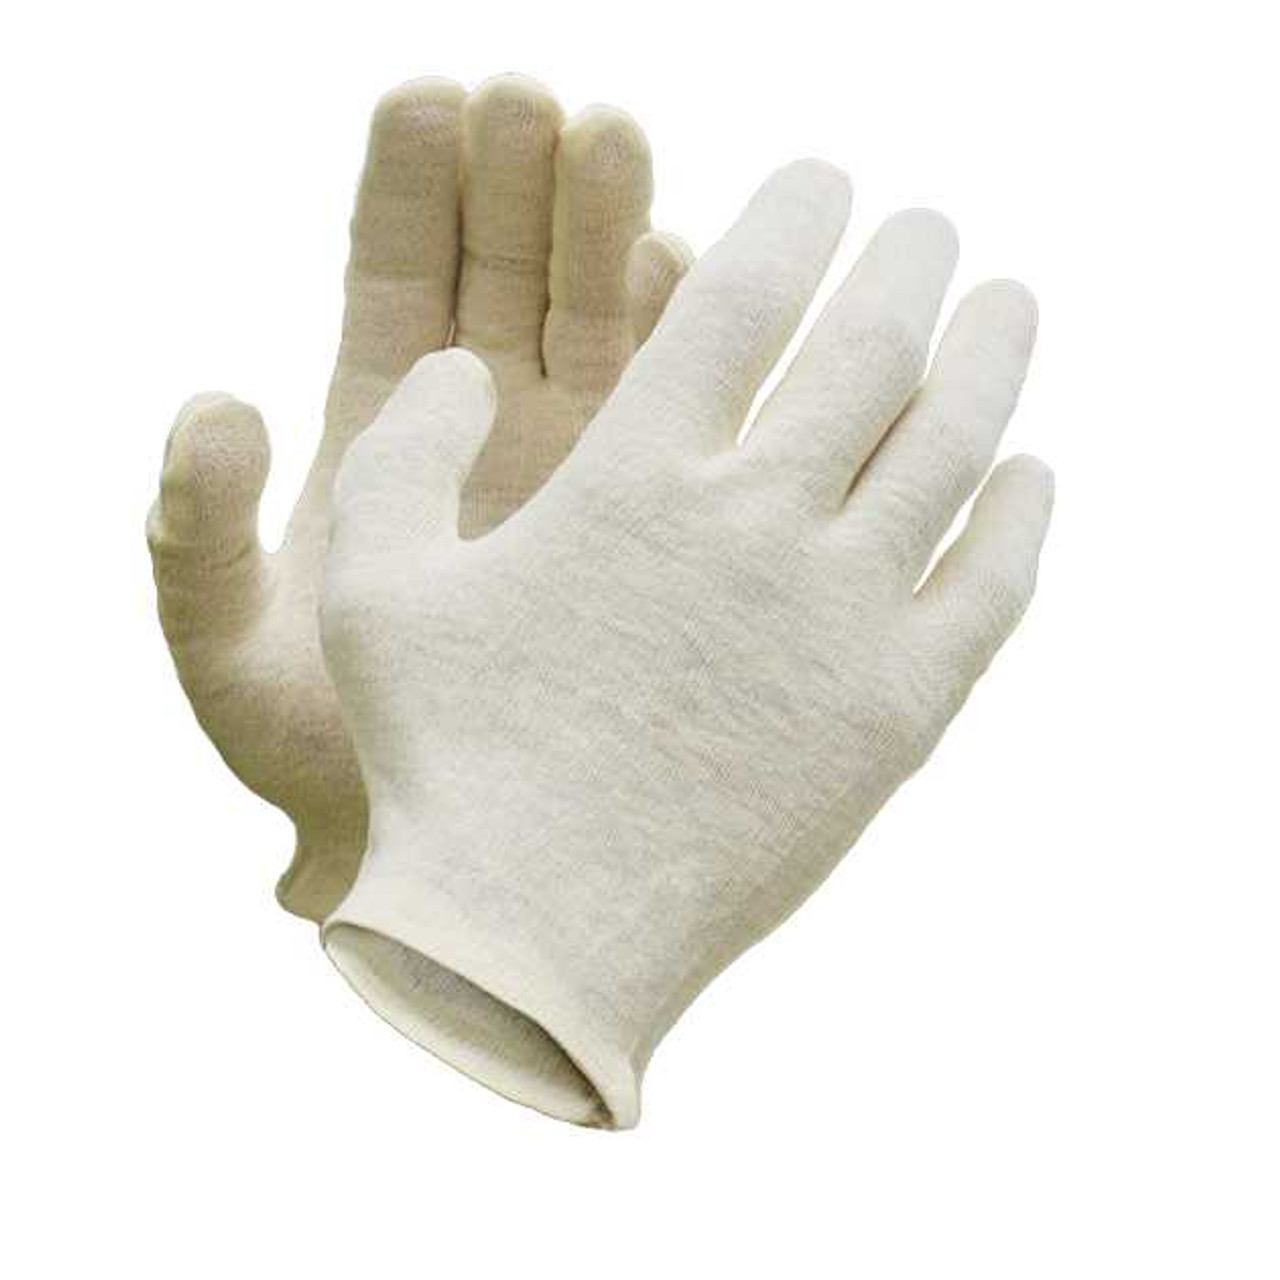 Vita™ Medium Weight Cotton Inspection Glove - Hemmed Cuff (600 pairs / case)